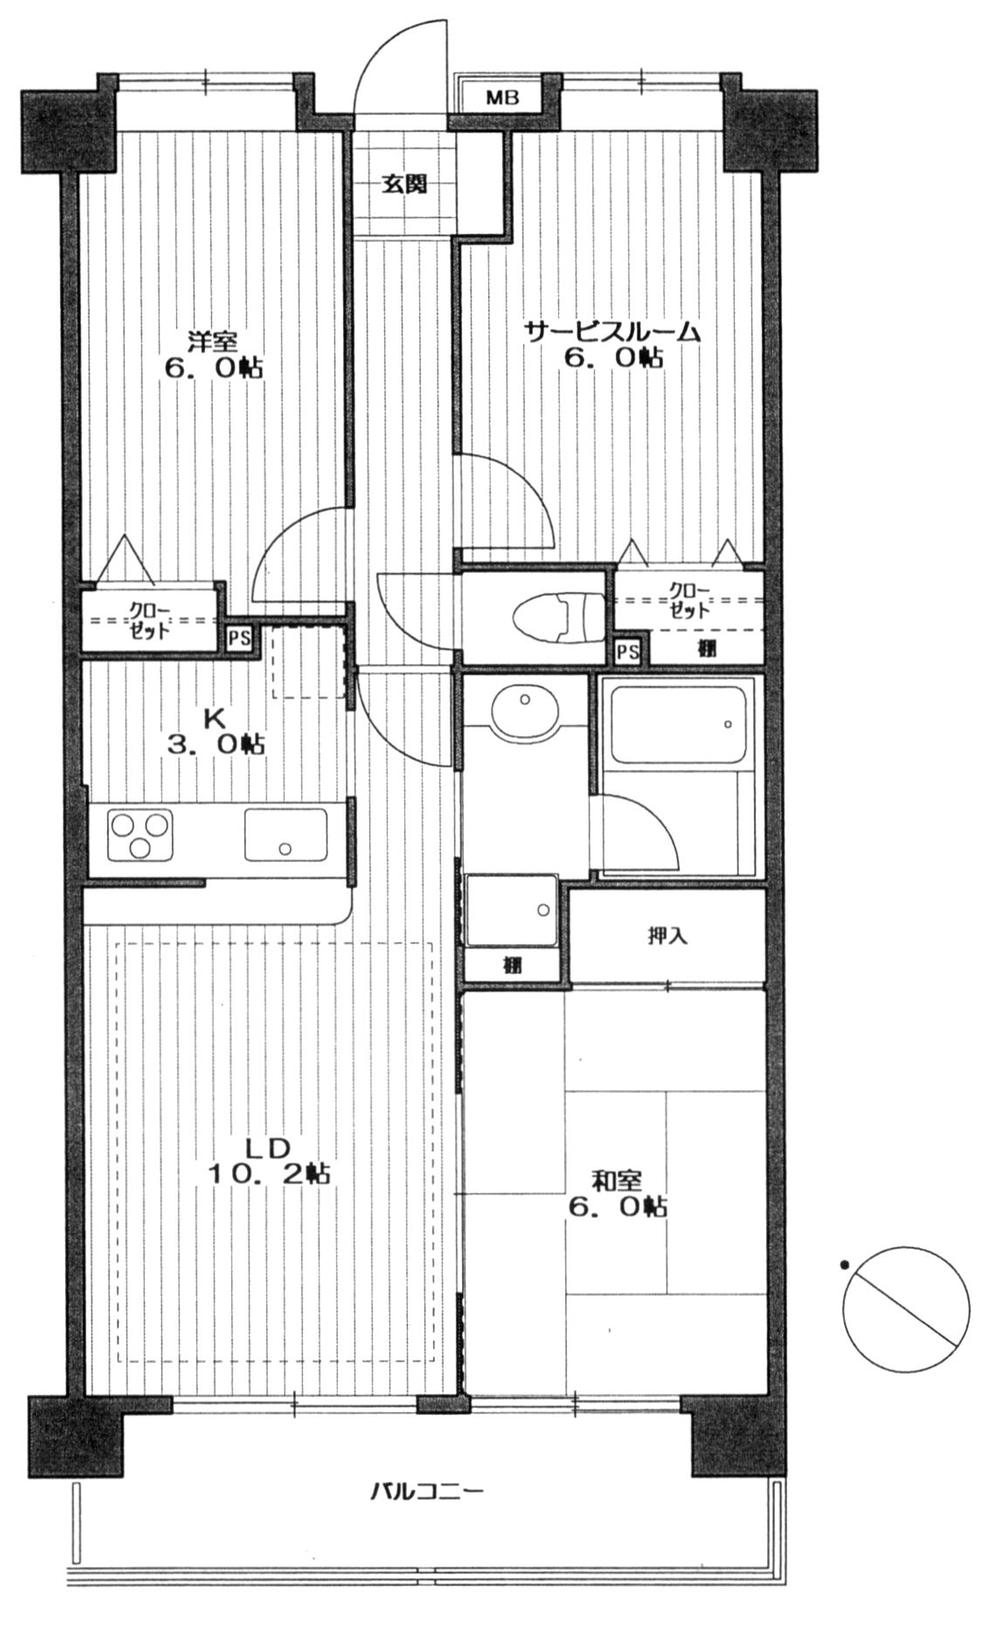 Floor plan. 2LDK + S (storeroom), Price 24,980,000 yen, Footprint 66 sq m , Balcony area 8.55 sq m floor plan